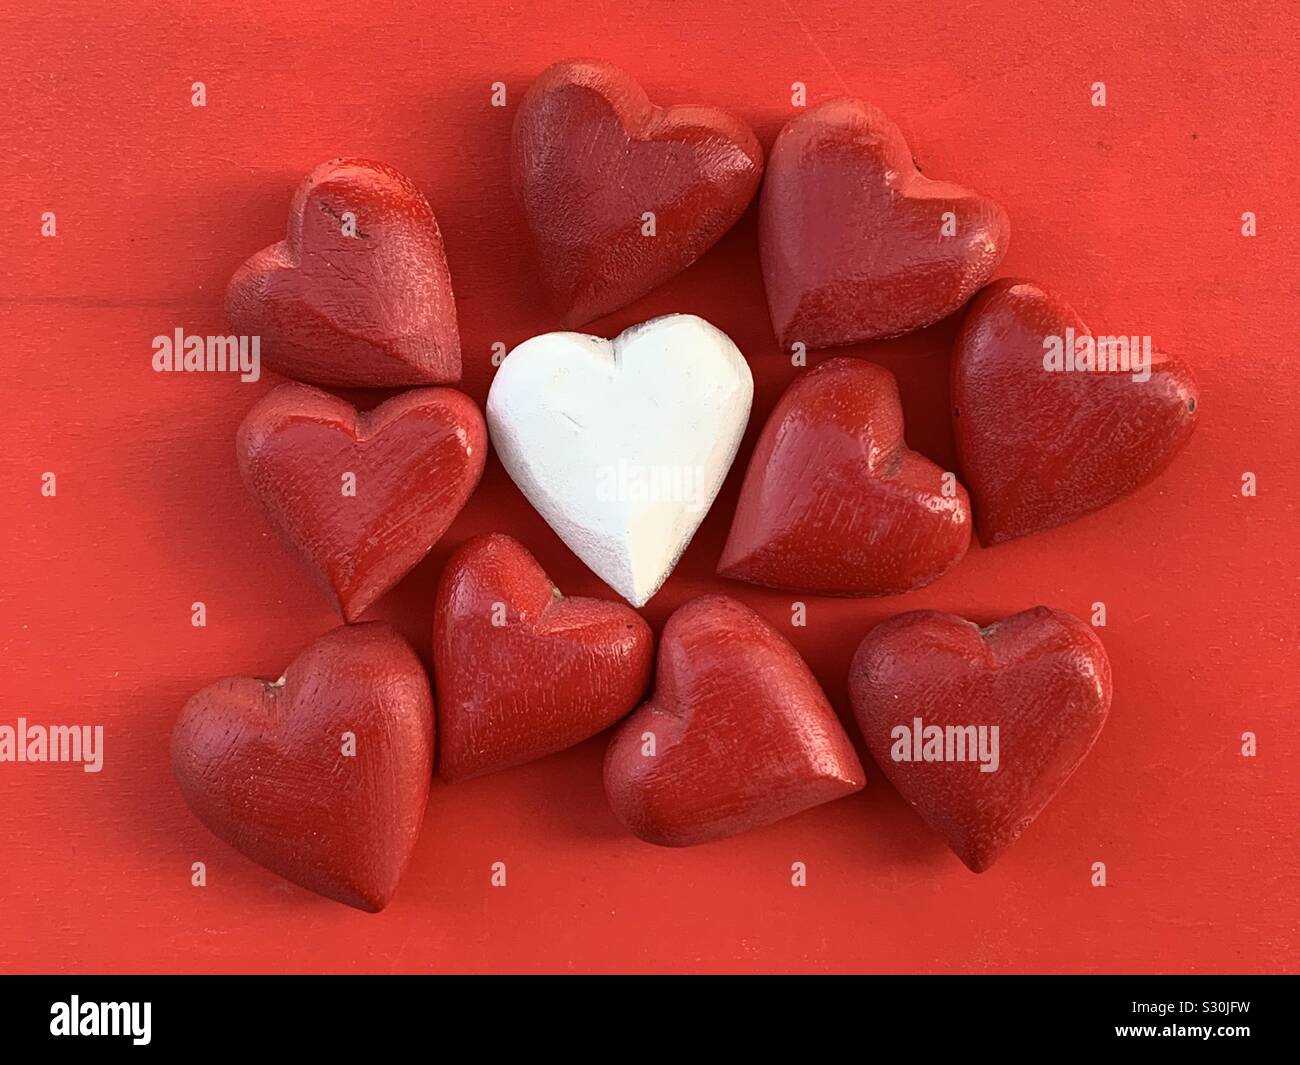 Amor diferente, conceptual y la composición creativa con corazones de madera roja alrededor de un núcleo blanco Foto de stock